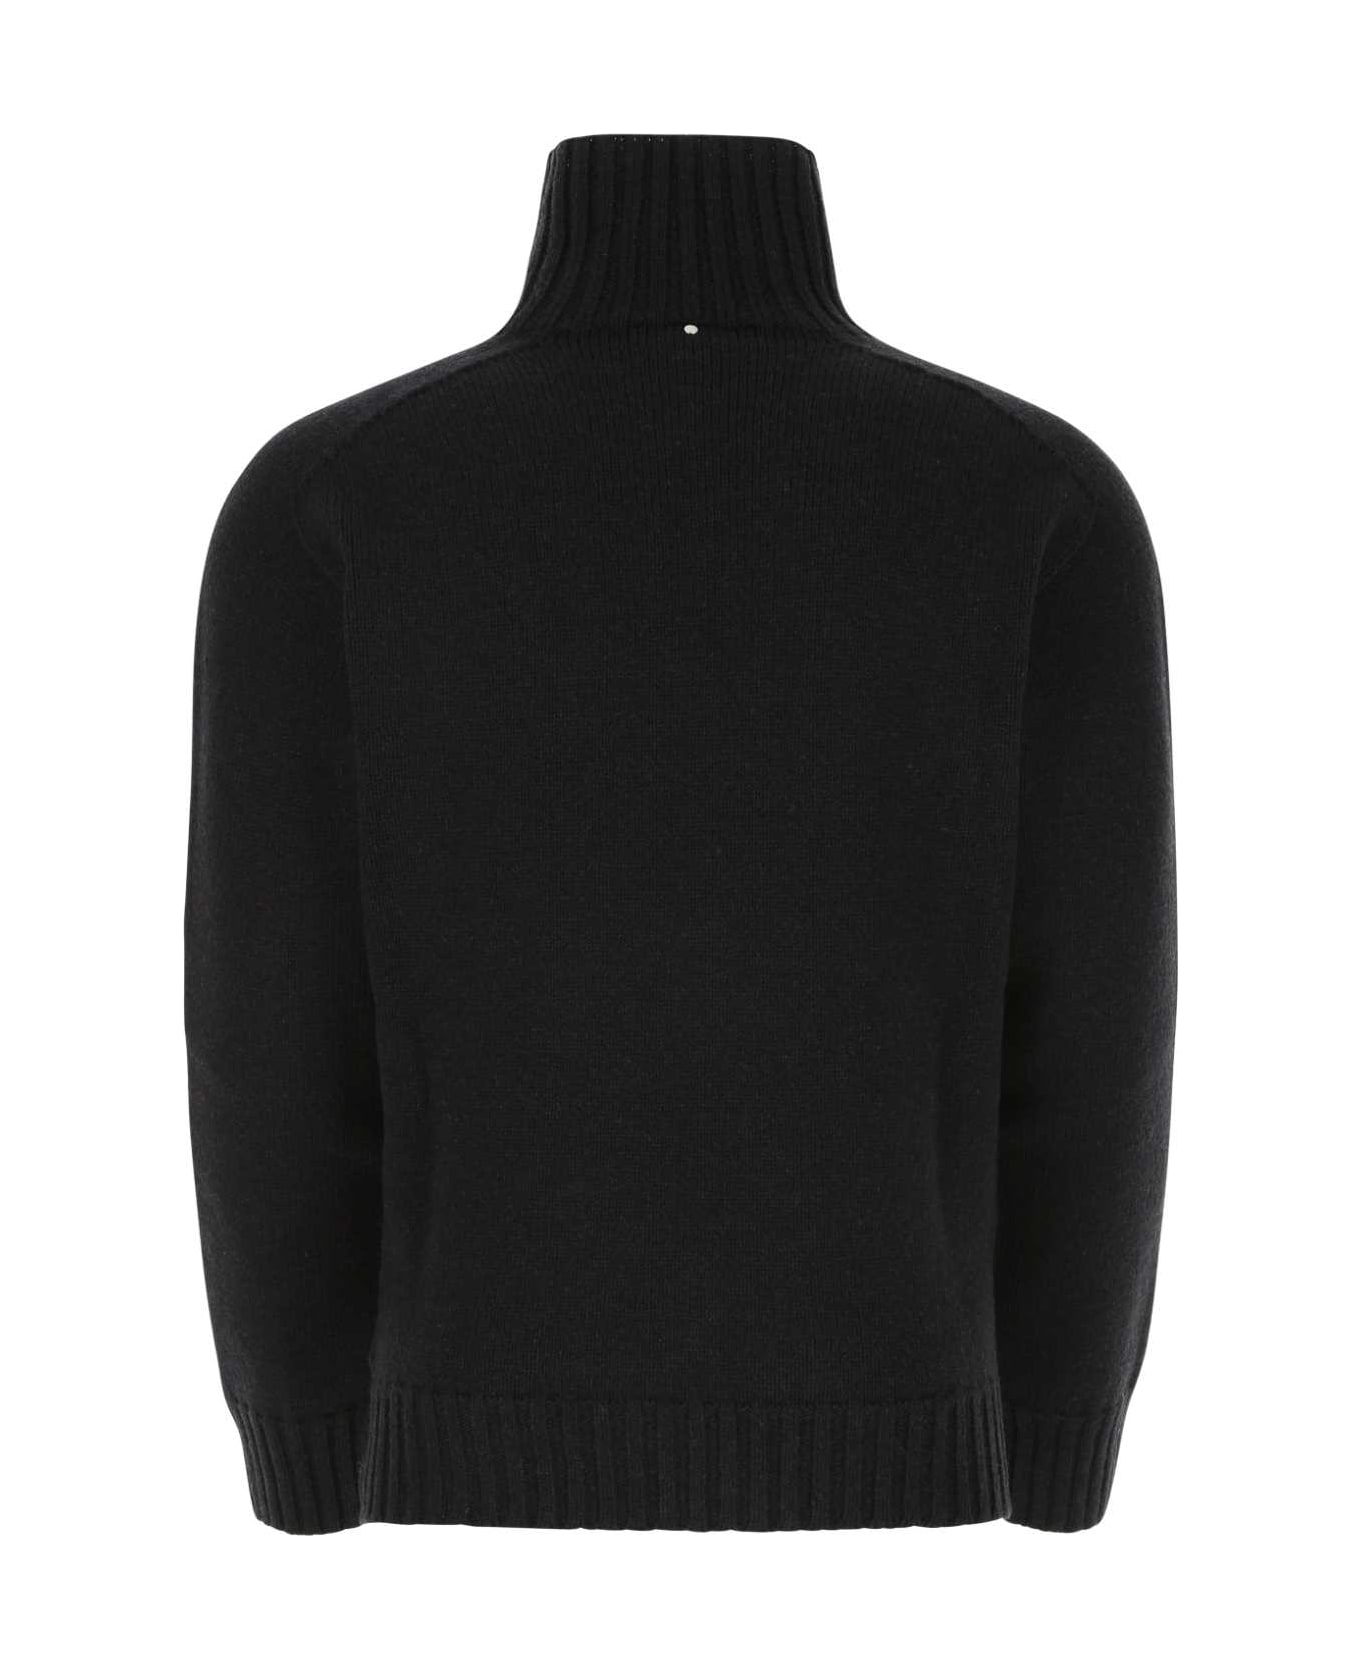 OAMC Black Wool Sweater - 001 ニットウェア